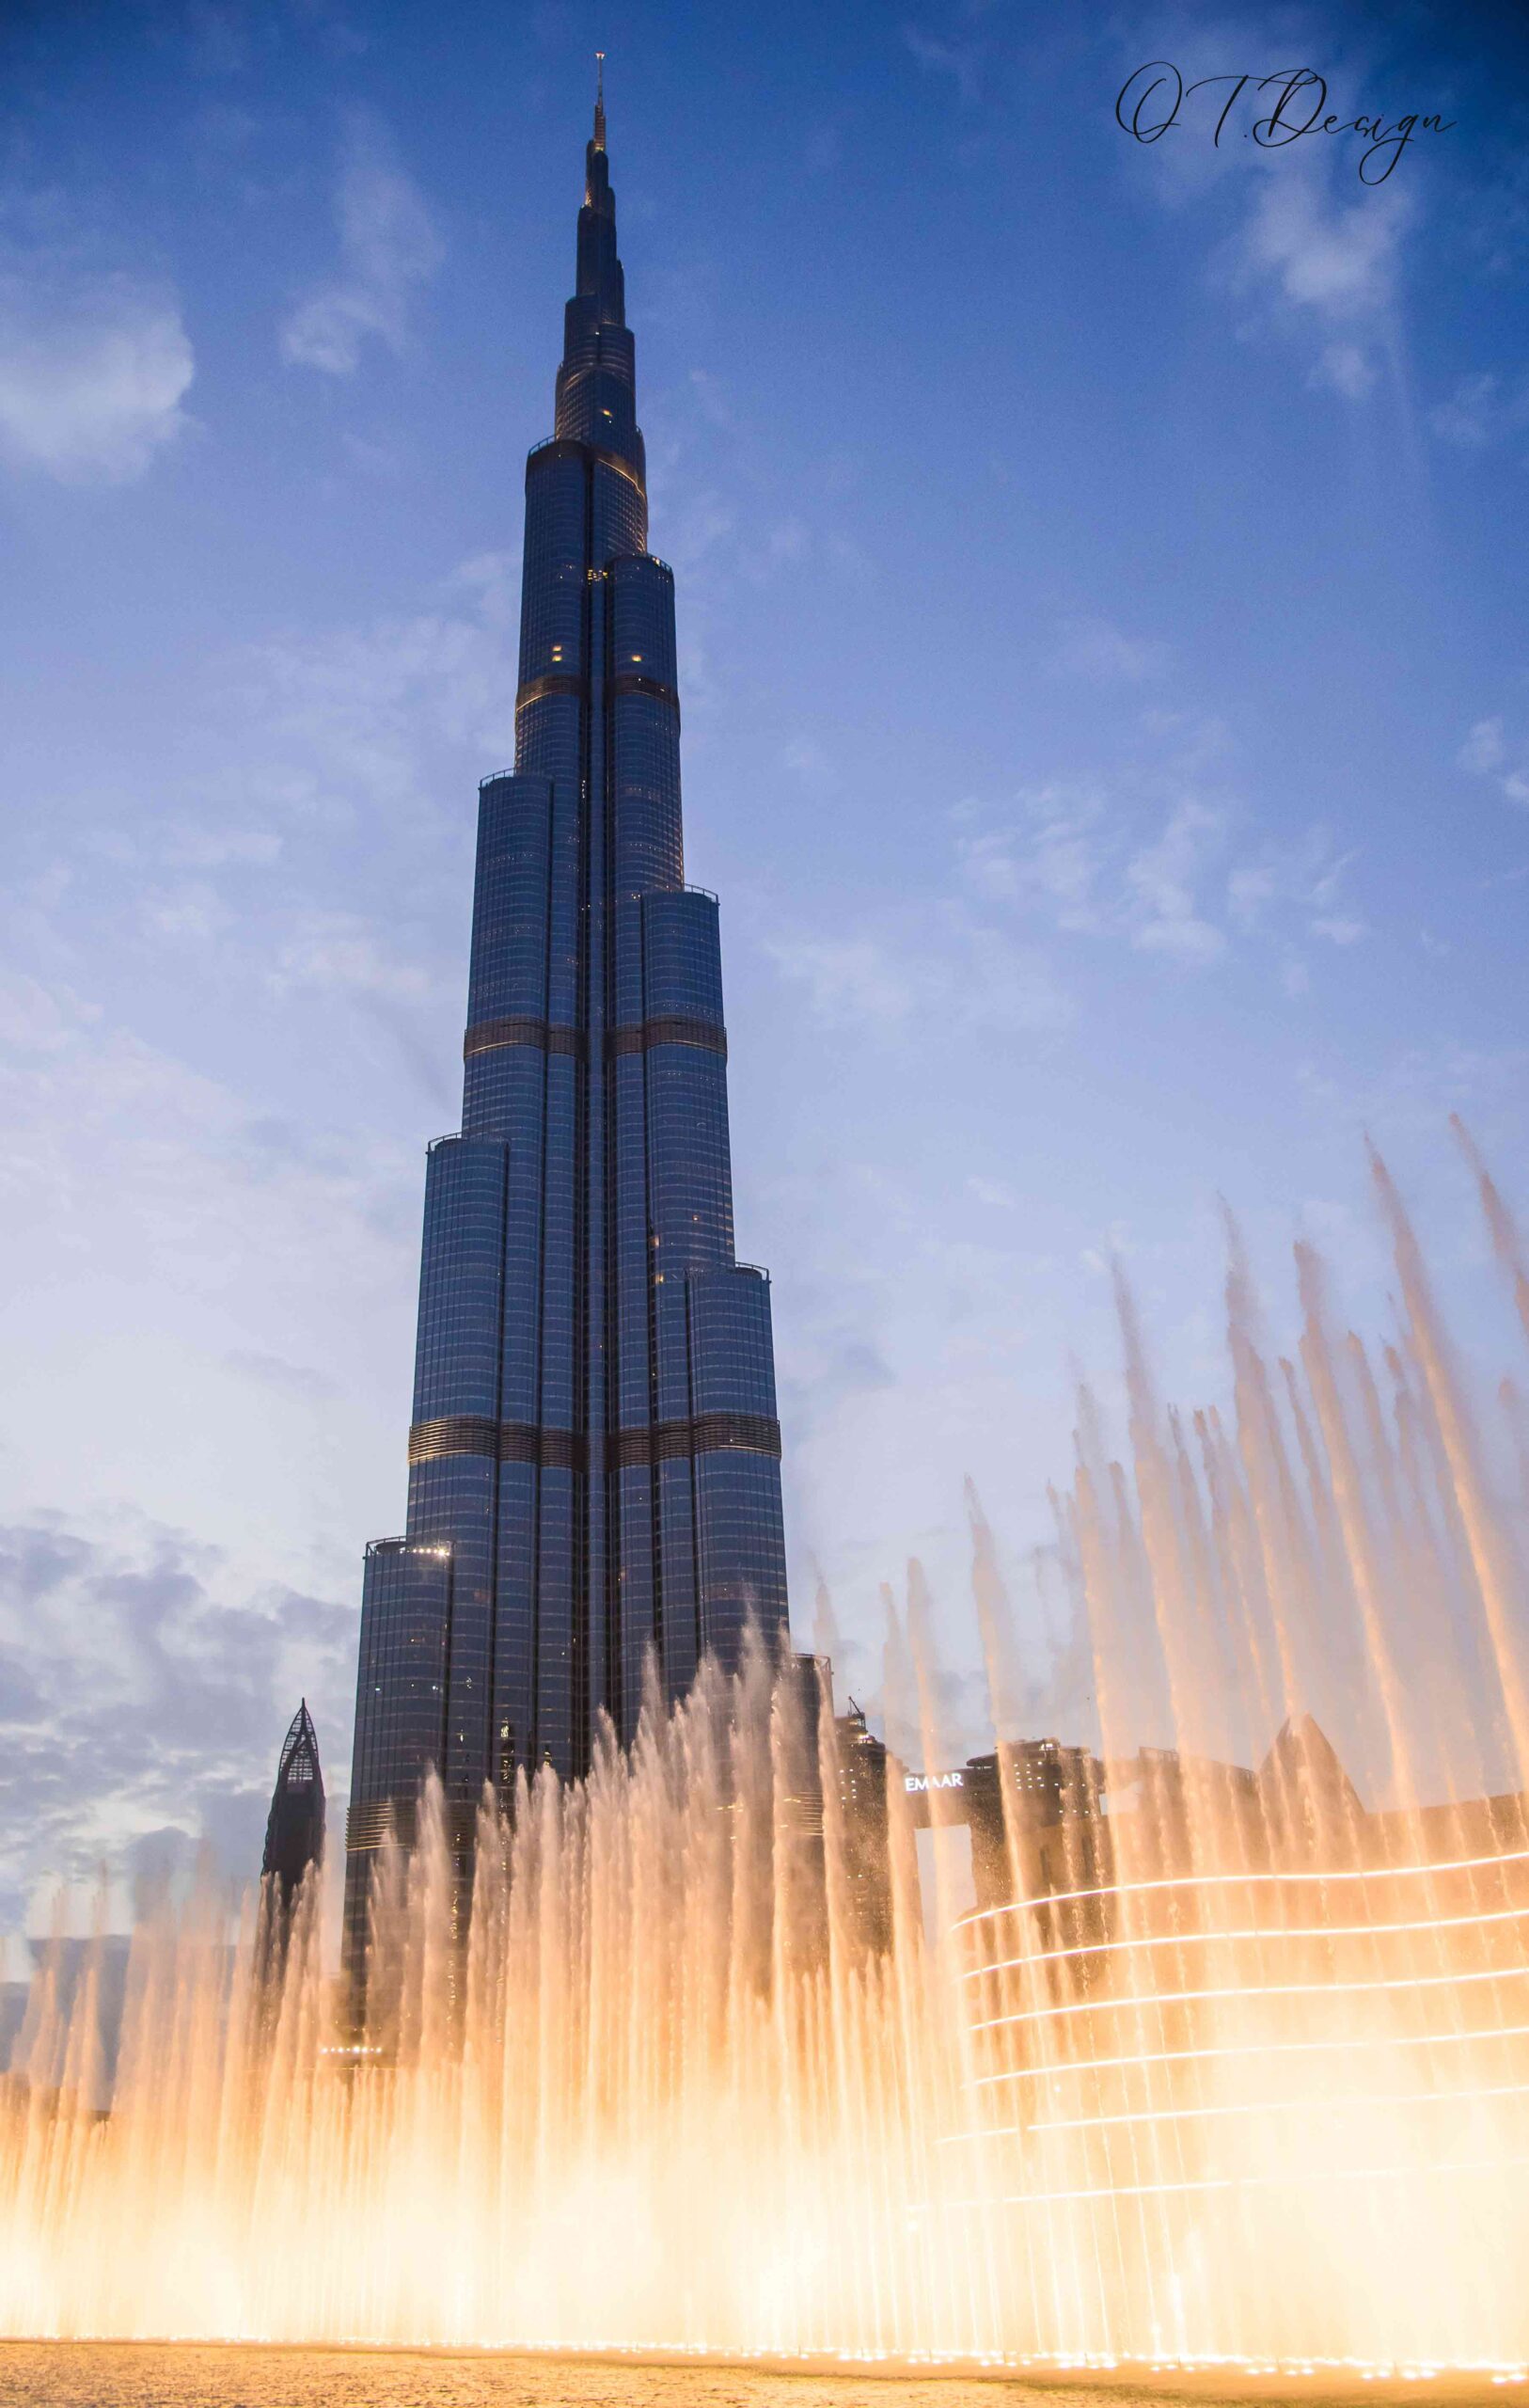 Dancing fountains in front of Burj-al-Arab, Dubai, UAE